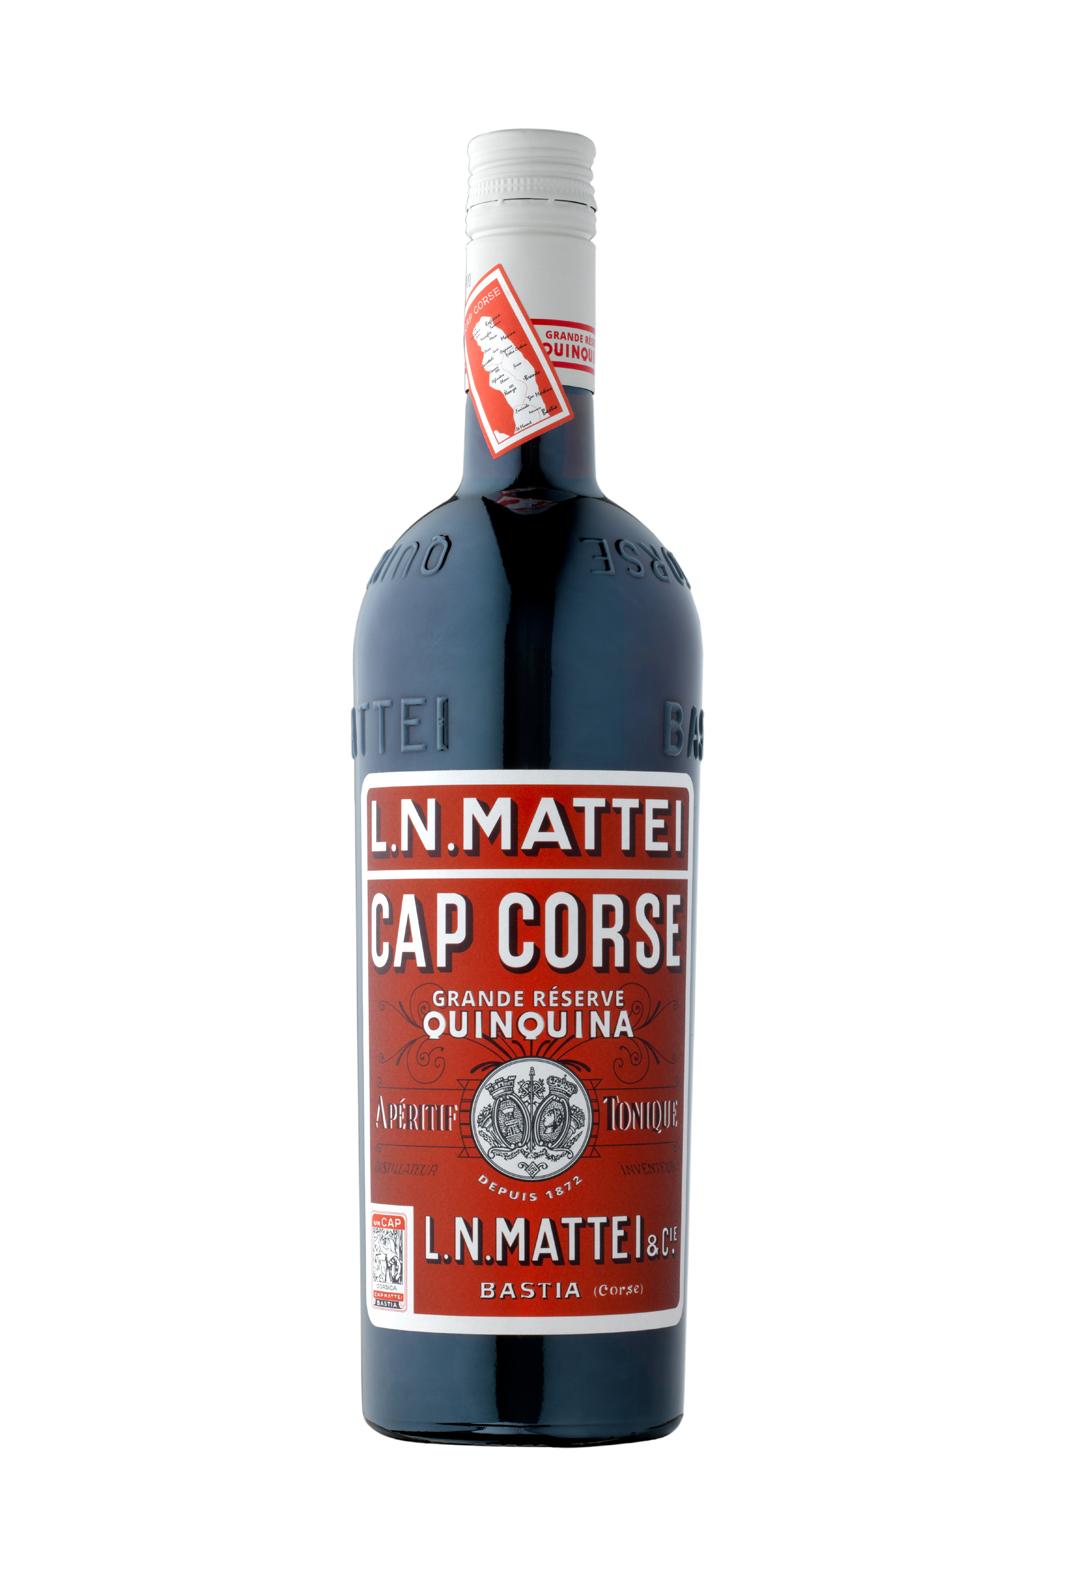 L.N. Mattei Cap Corse Gde Reserve Rouge (RED)17% 750ml - Aperitif - Liquor Wine Cave